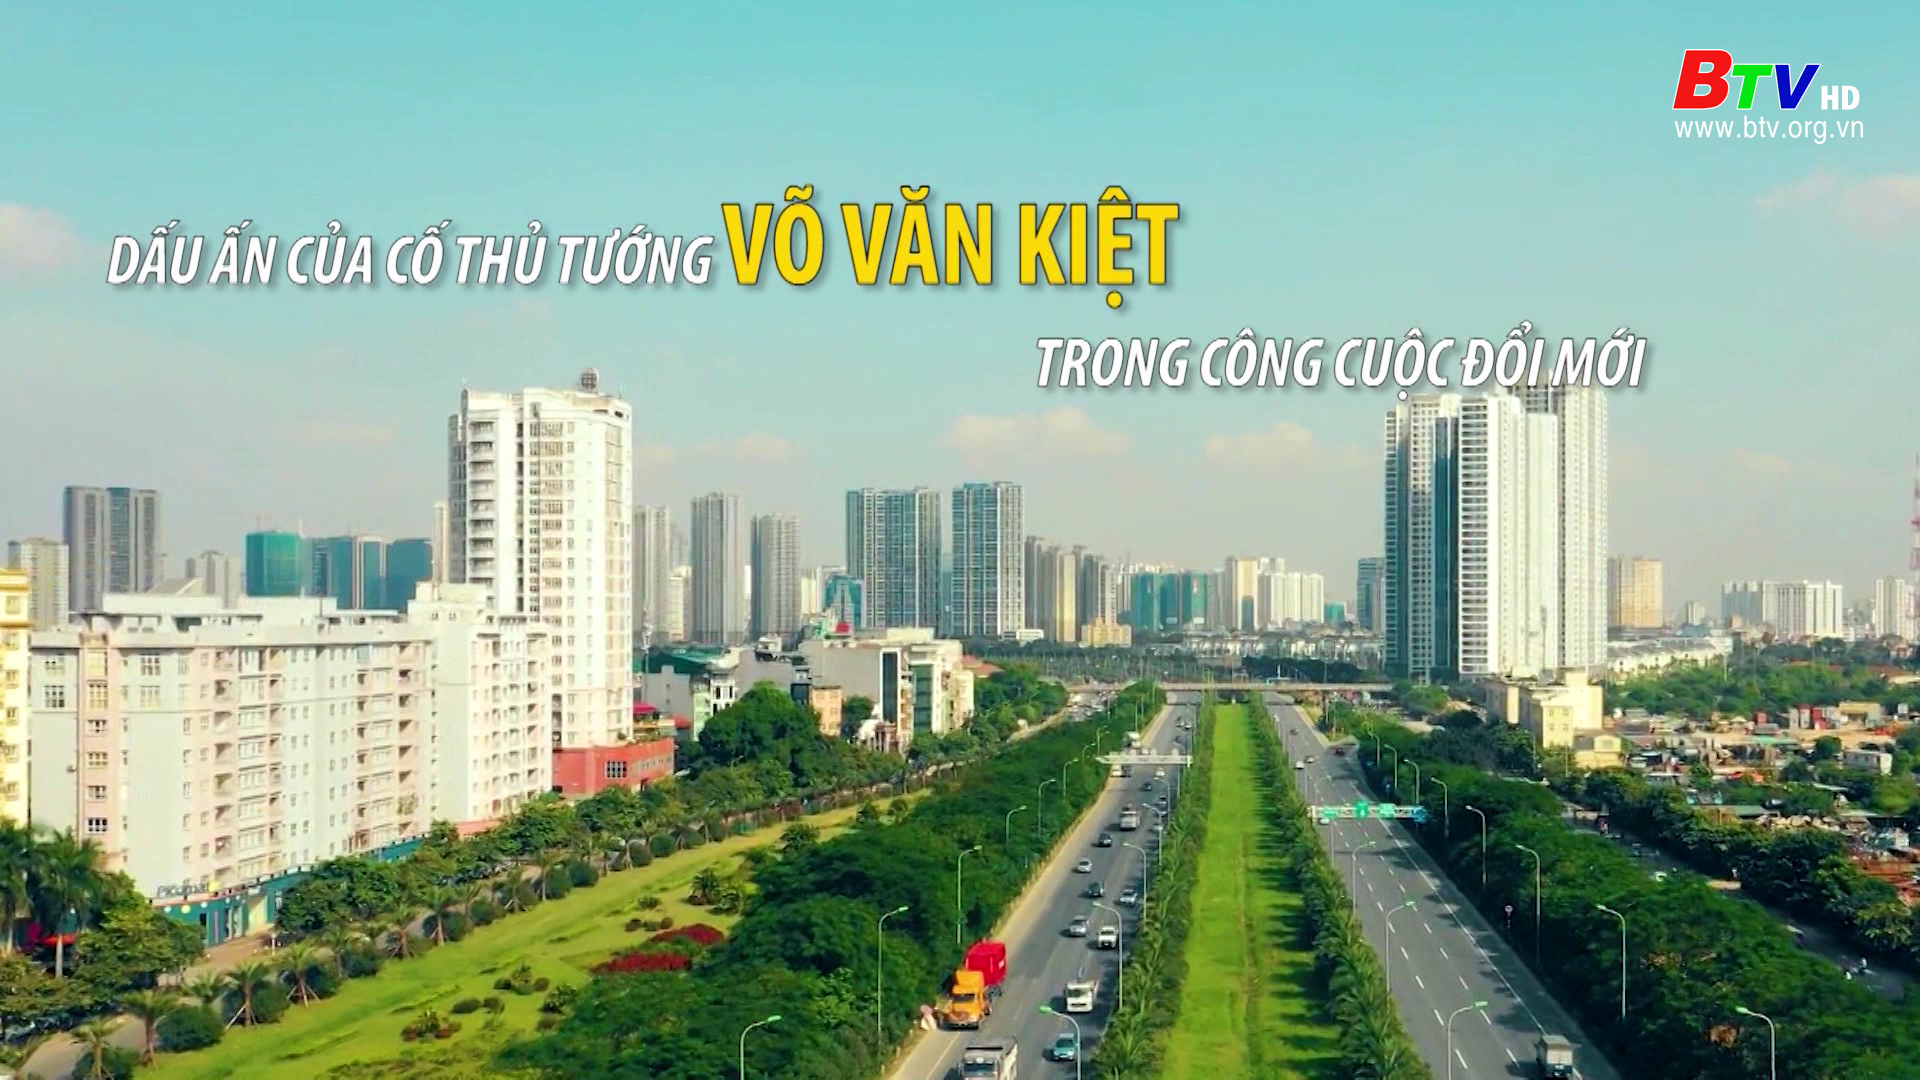 Dấu ấn của cố Thủ tướng Võ Văn Kiệt trong công cuộc đổi mới